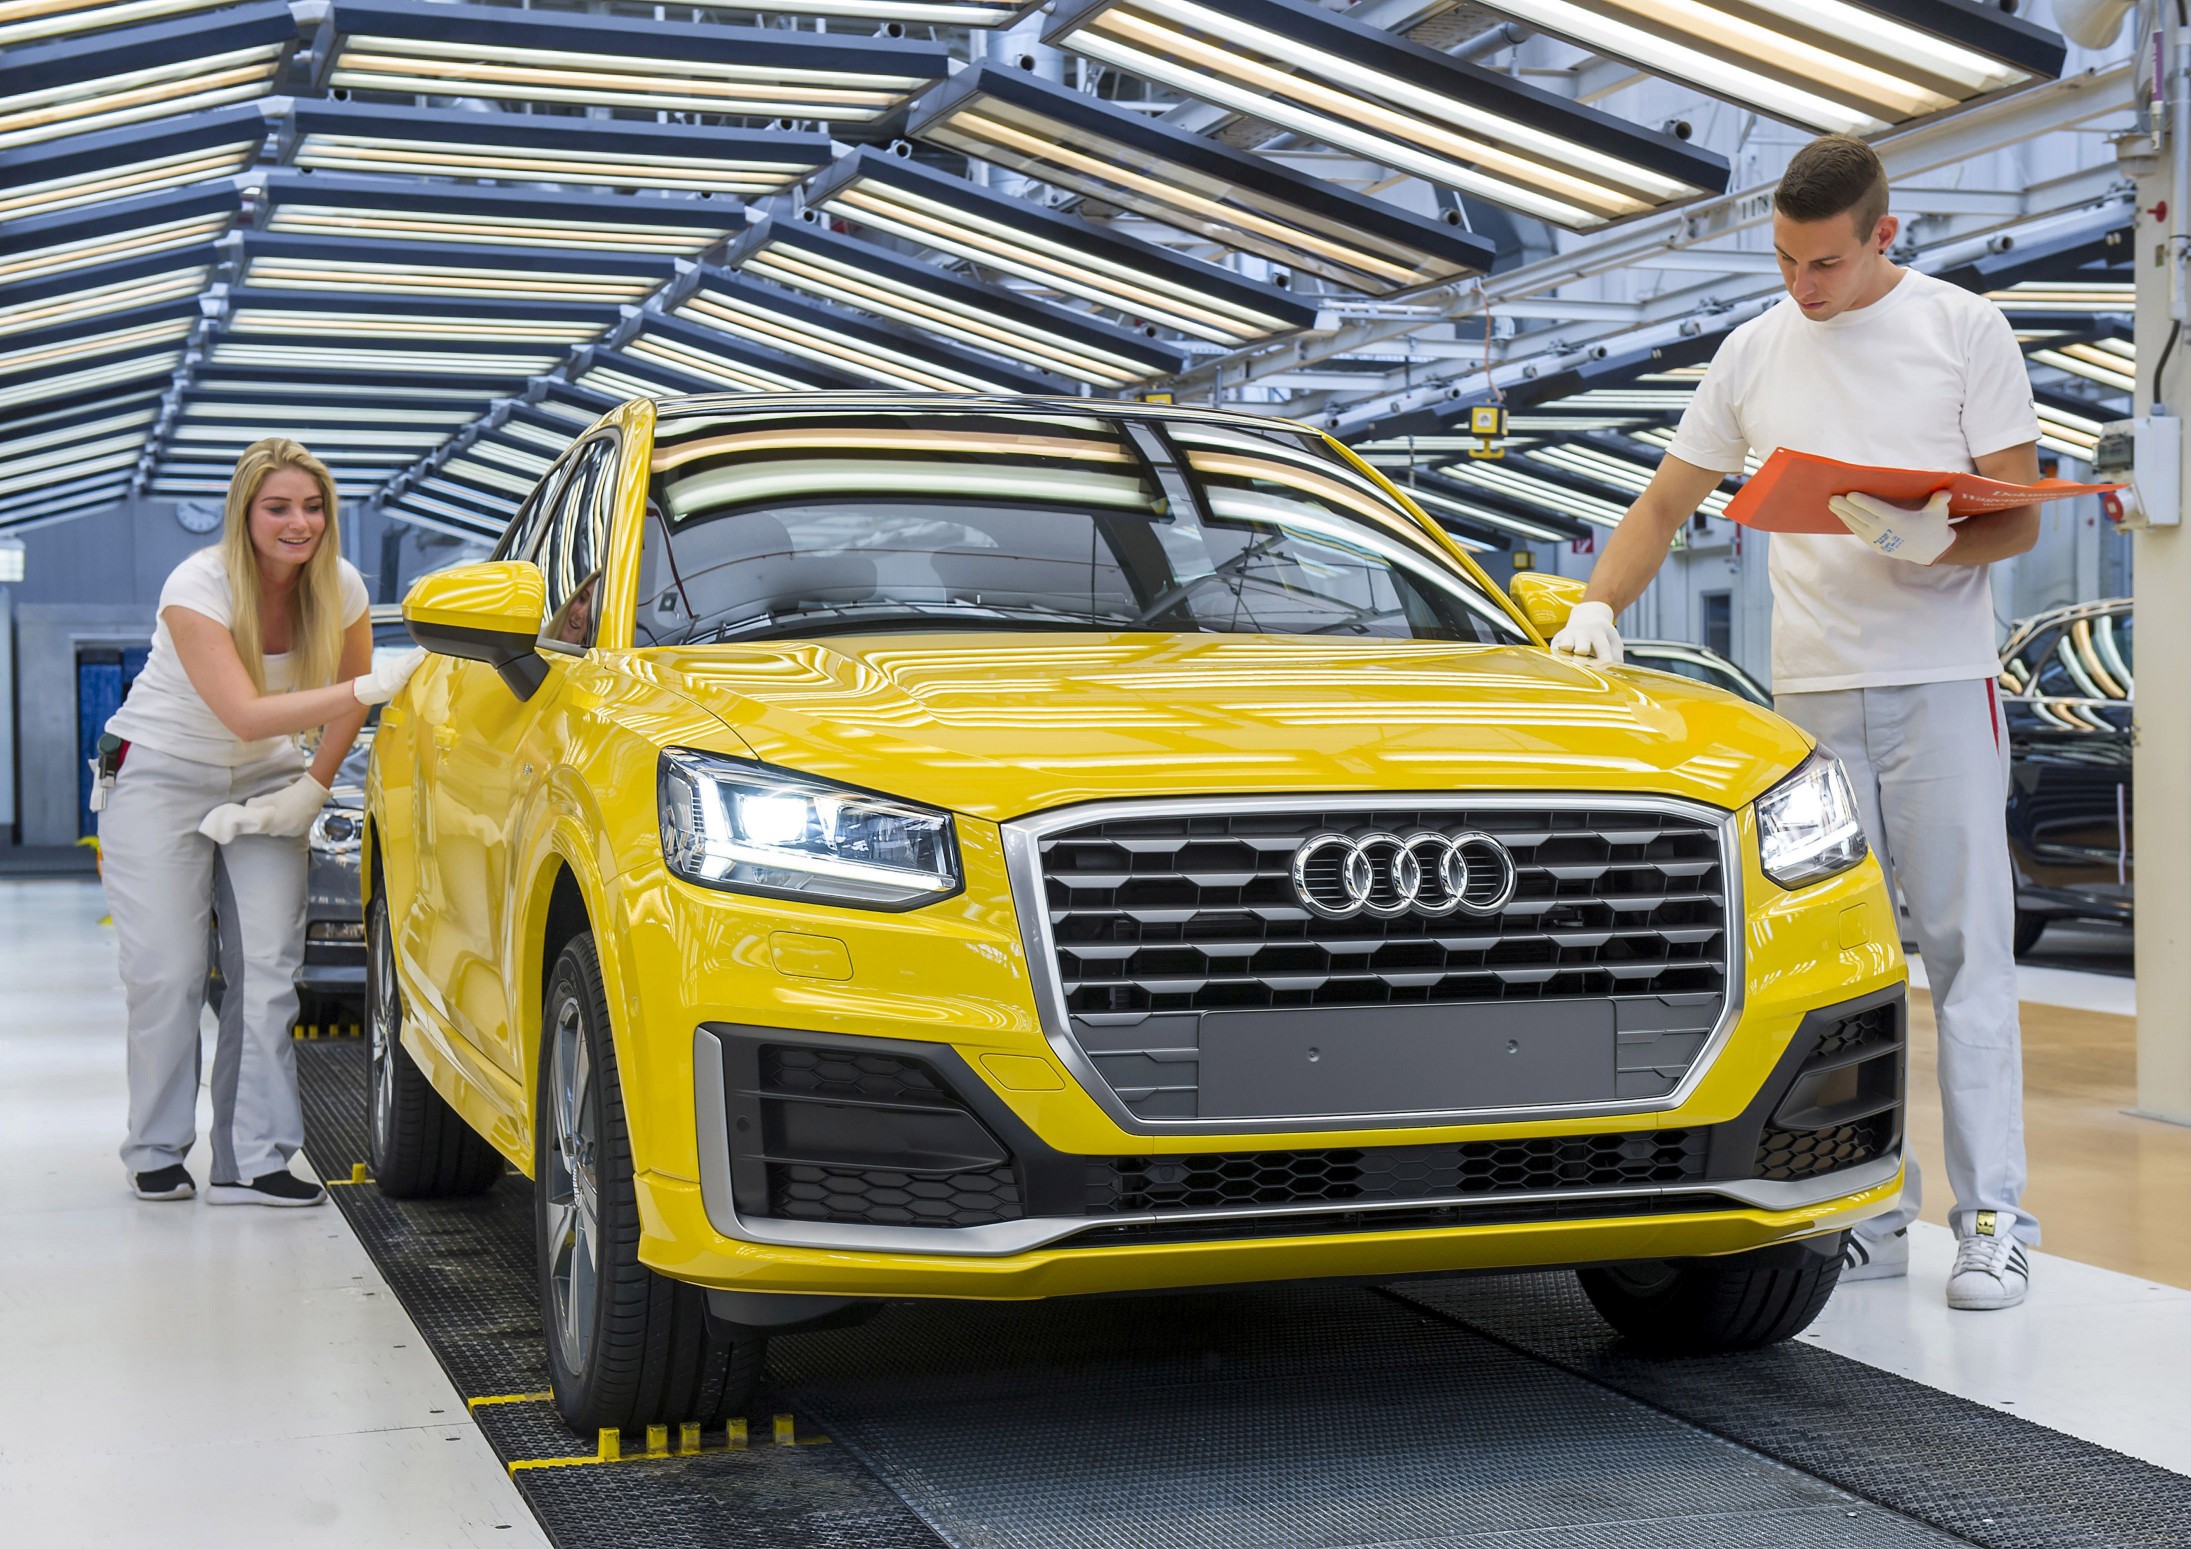 Un auto pequeño causa una gran impresión: El nuevo Audi Q2